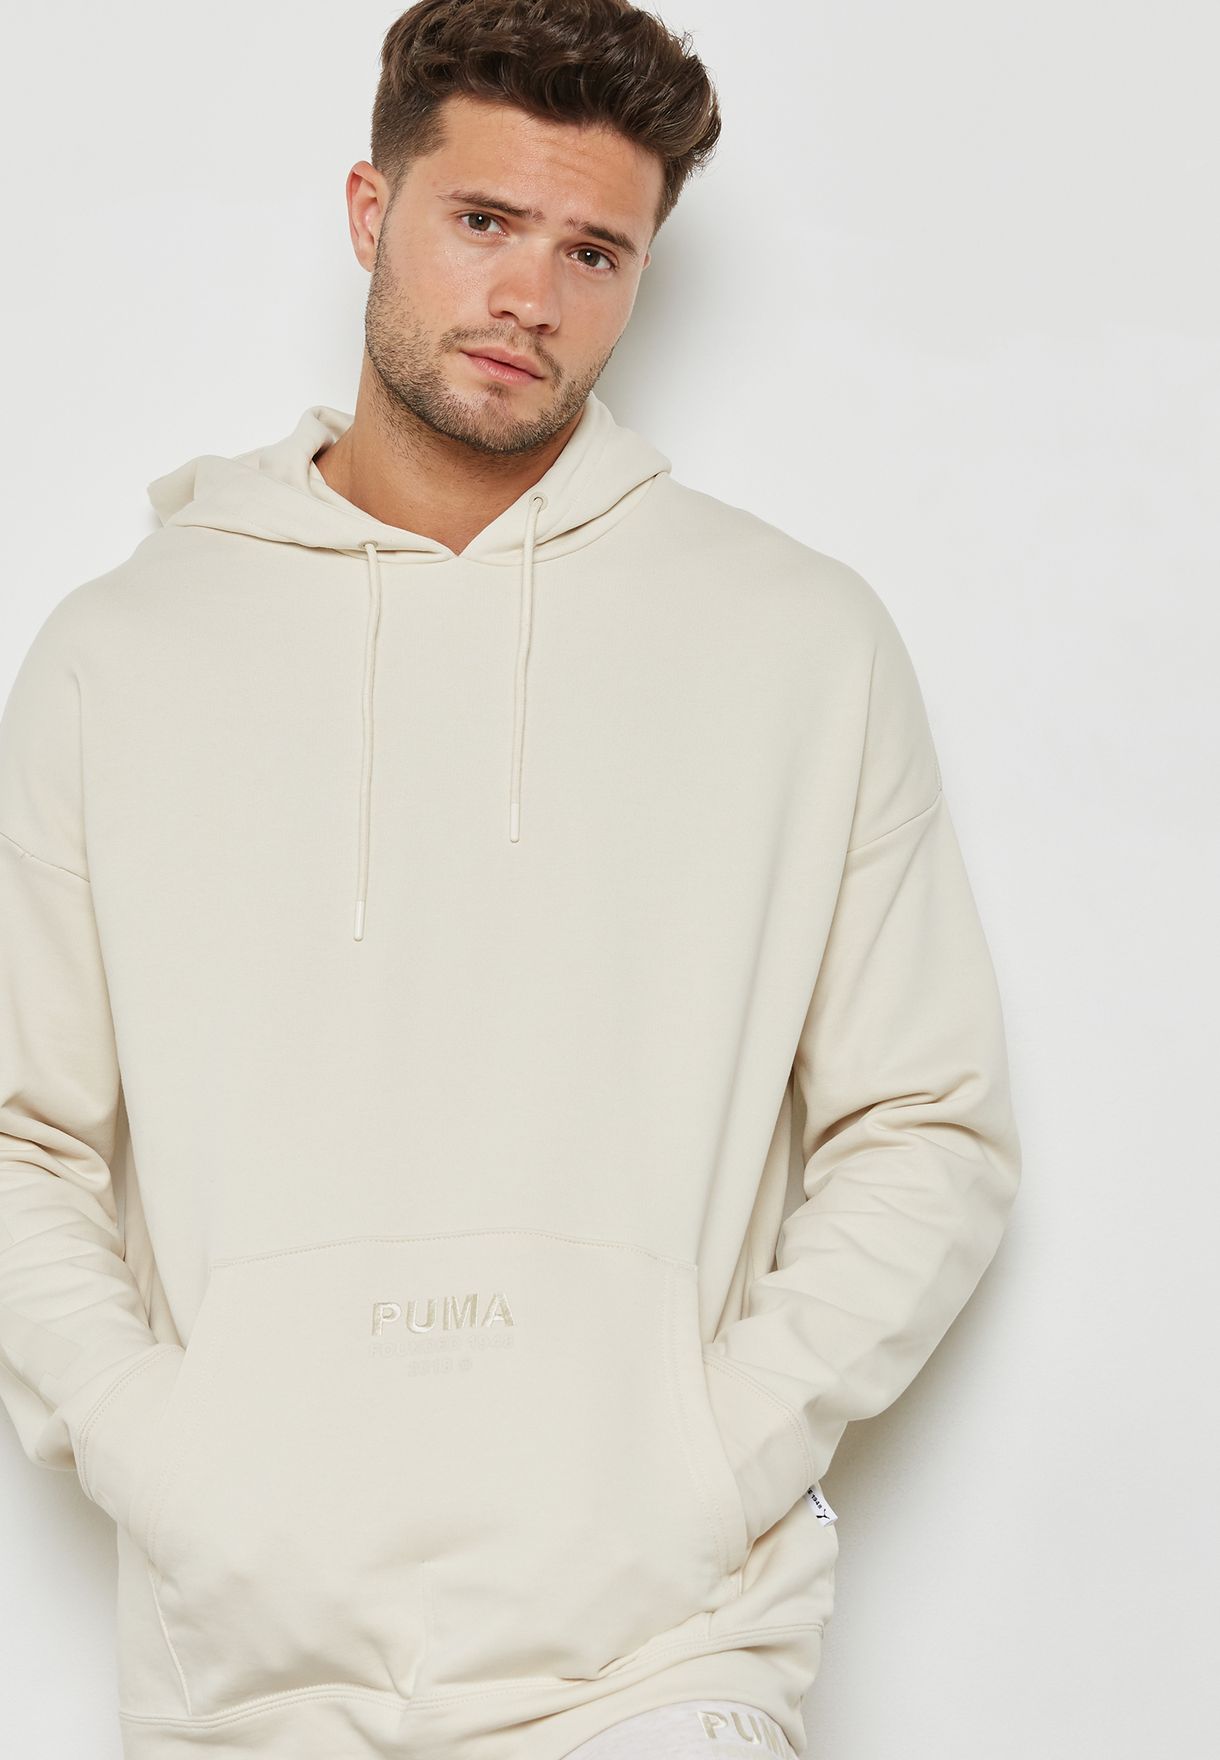 puma hoodie beige - 64% OFF 